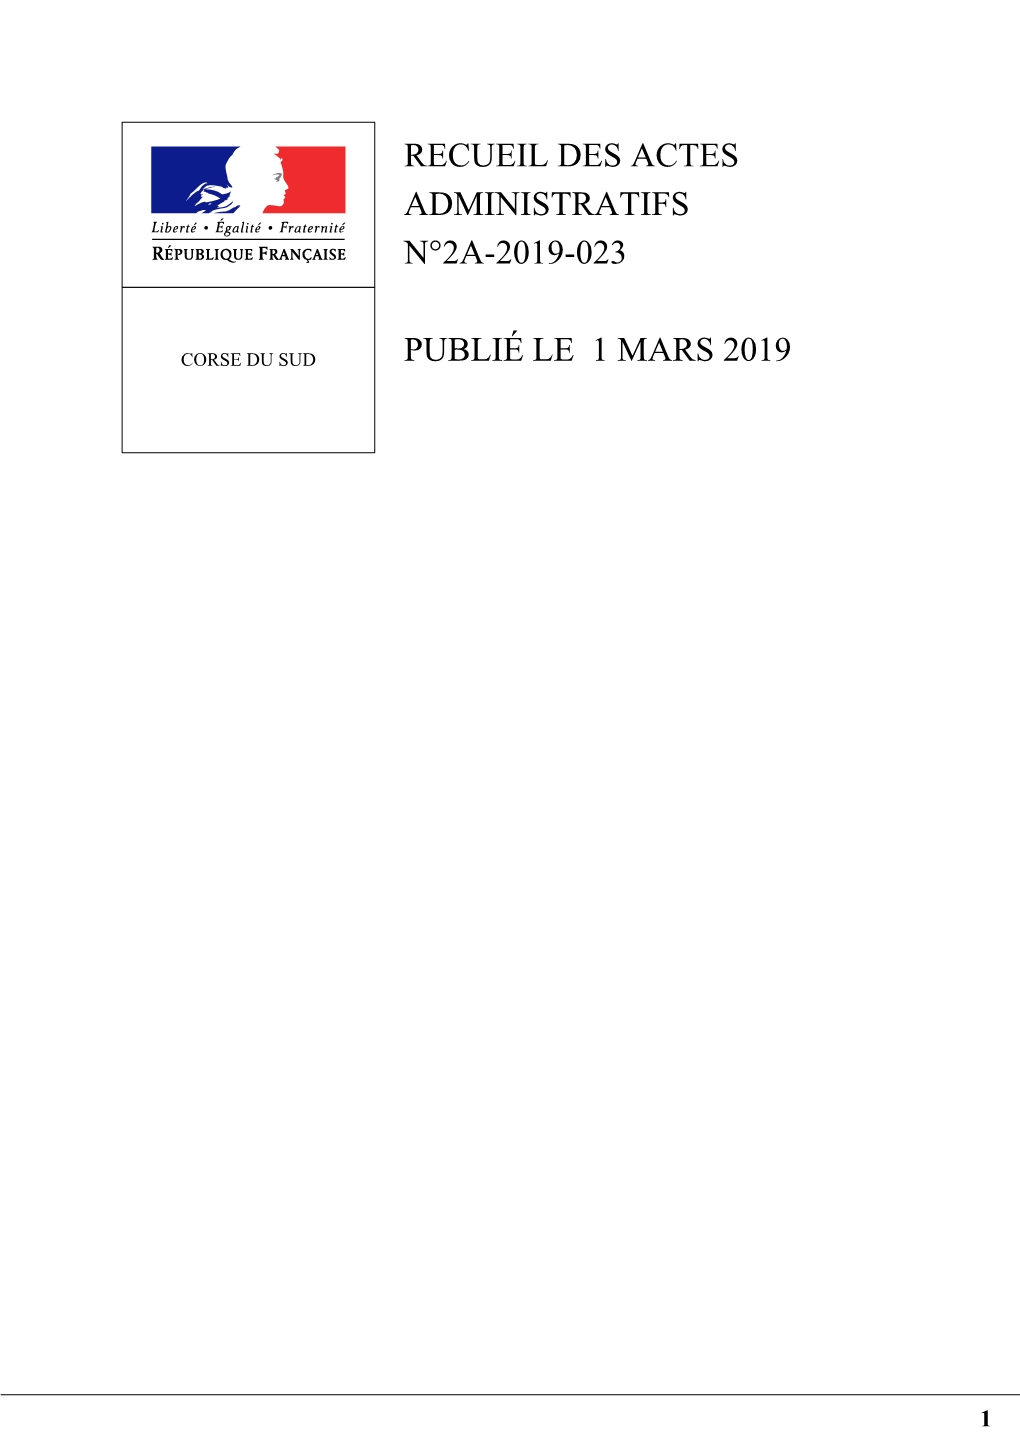 Recueil 2A 2019 023 Recueil Des Actes Administratifs